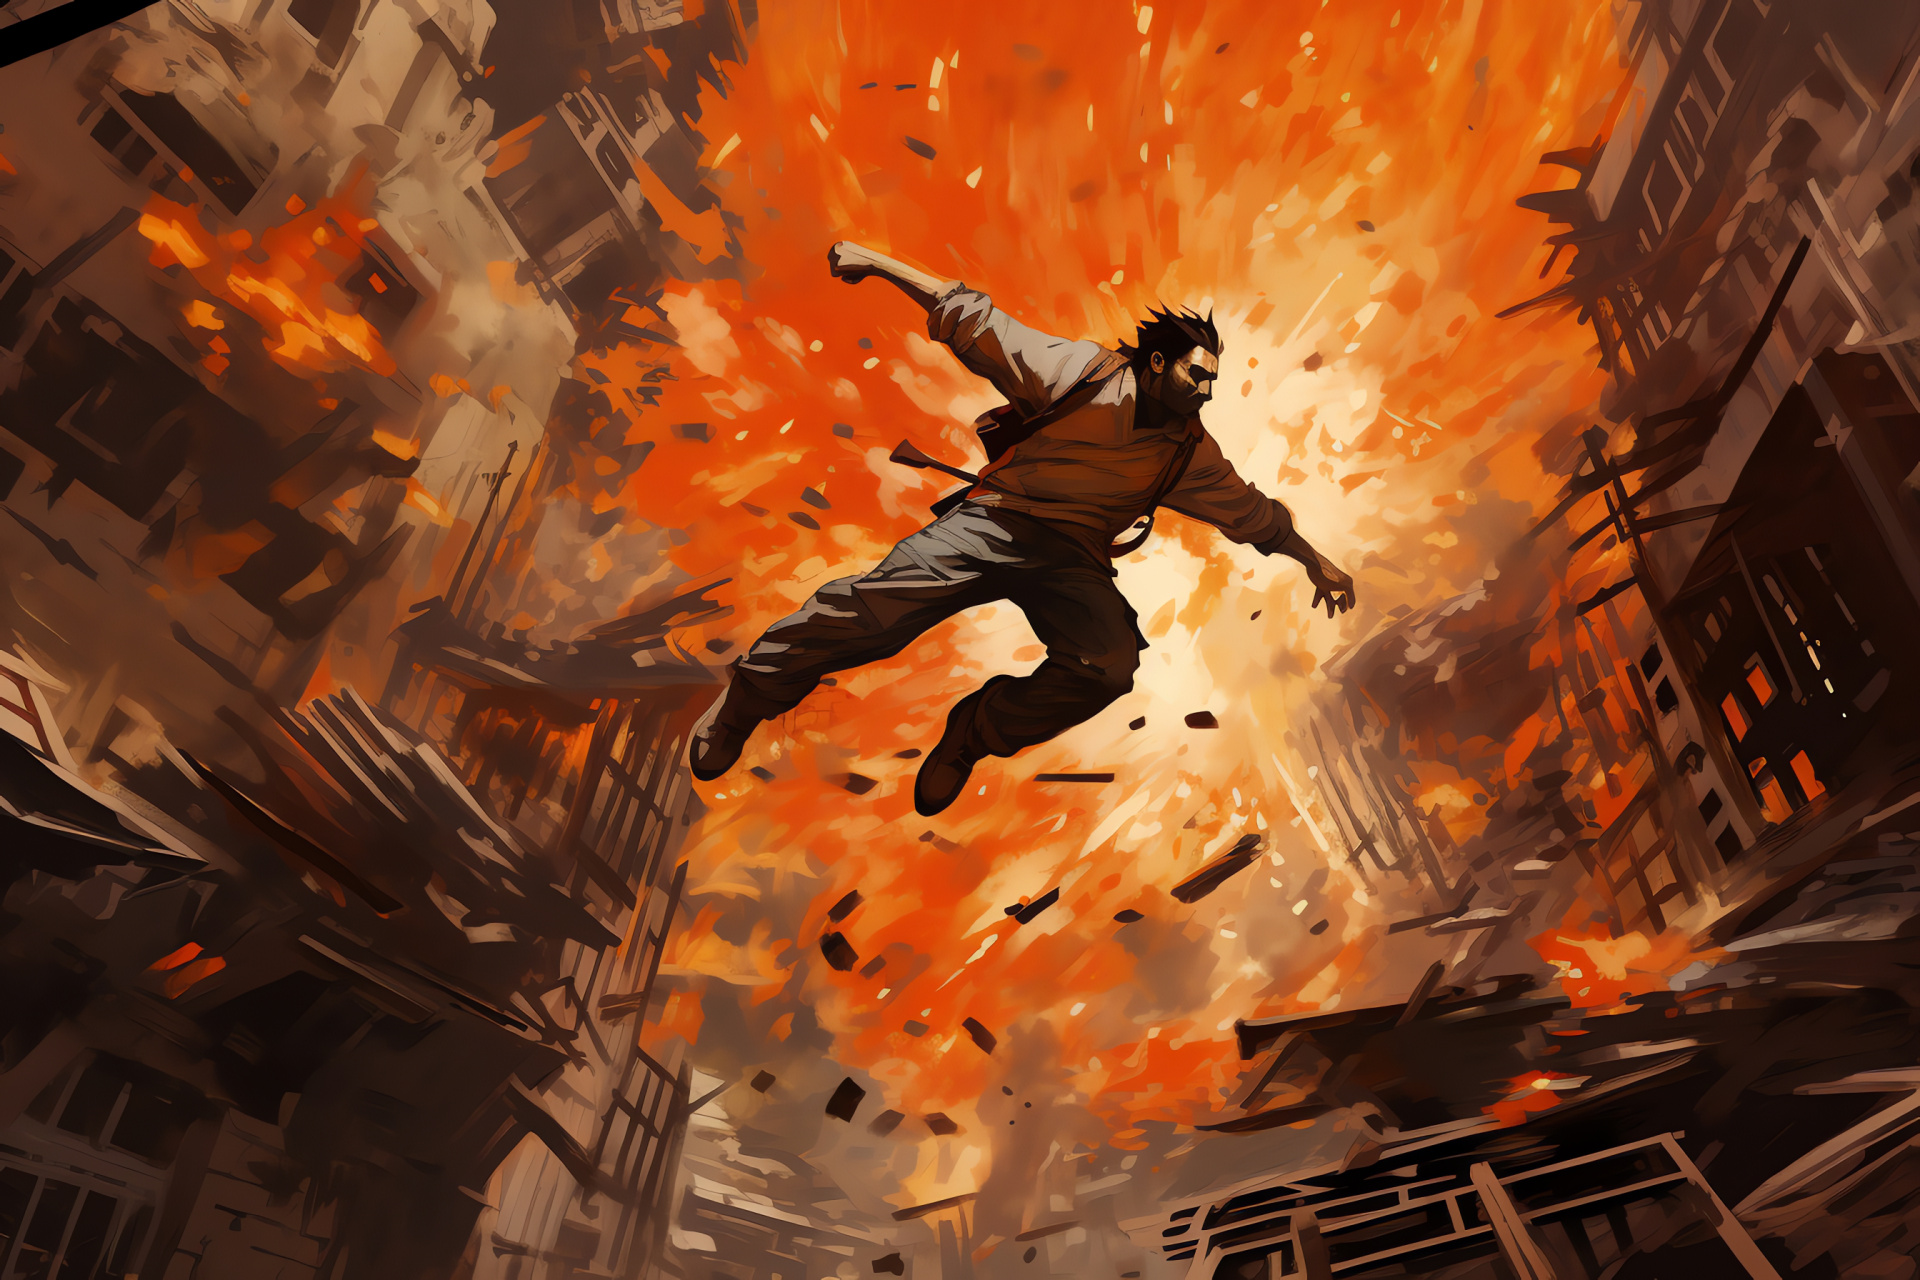 Prototype 2 character, James Heller avatar, In-game movement, Destructive urban scenery, Post-apocalyptic terrain, HD Desktop Wallpaper